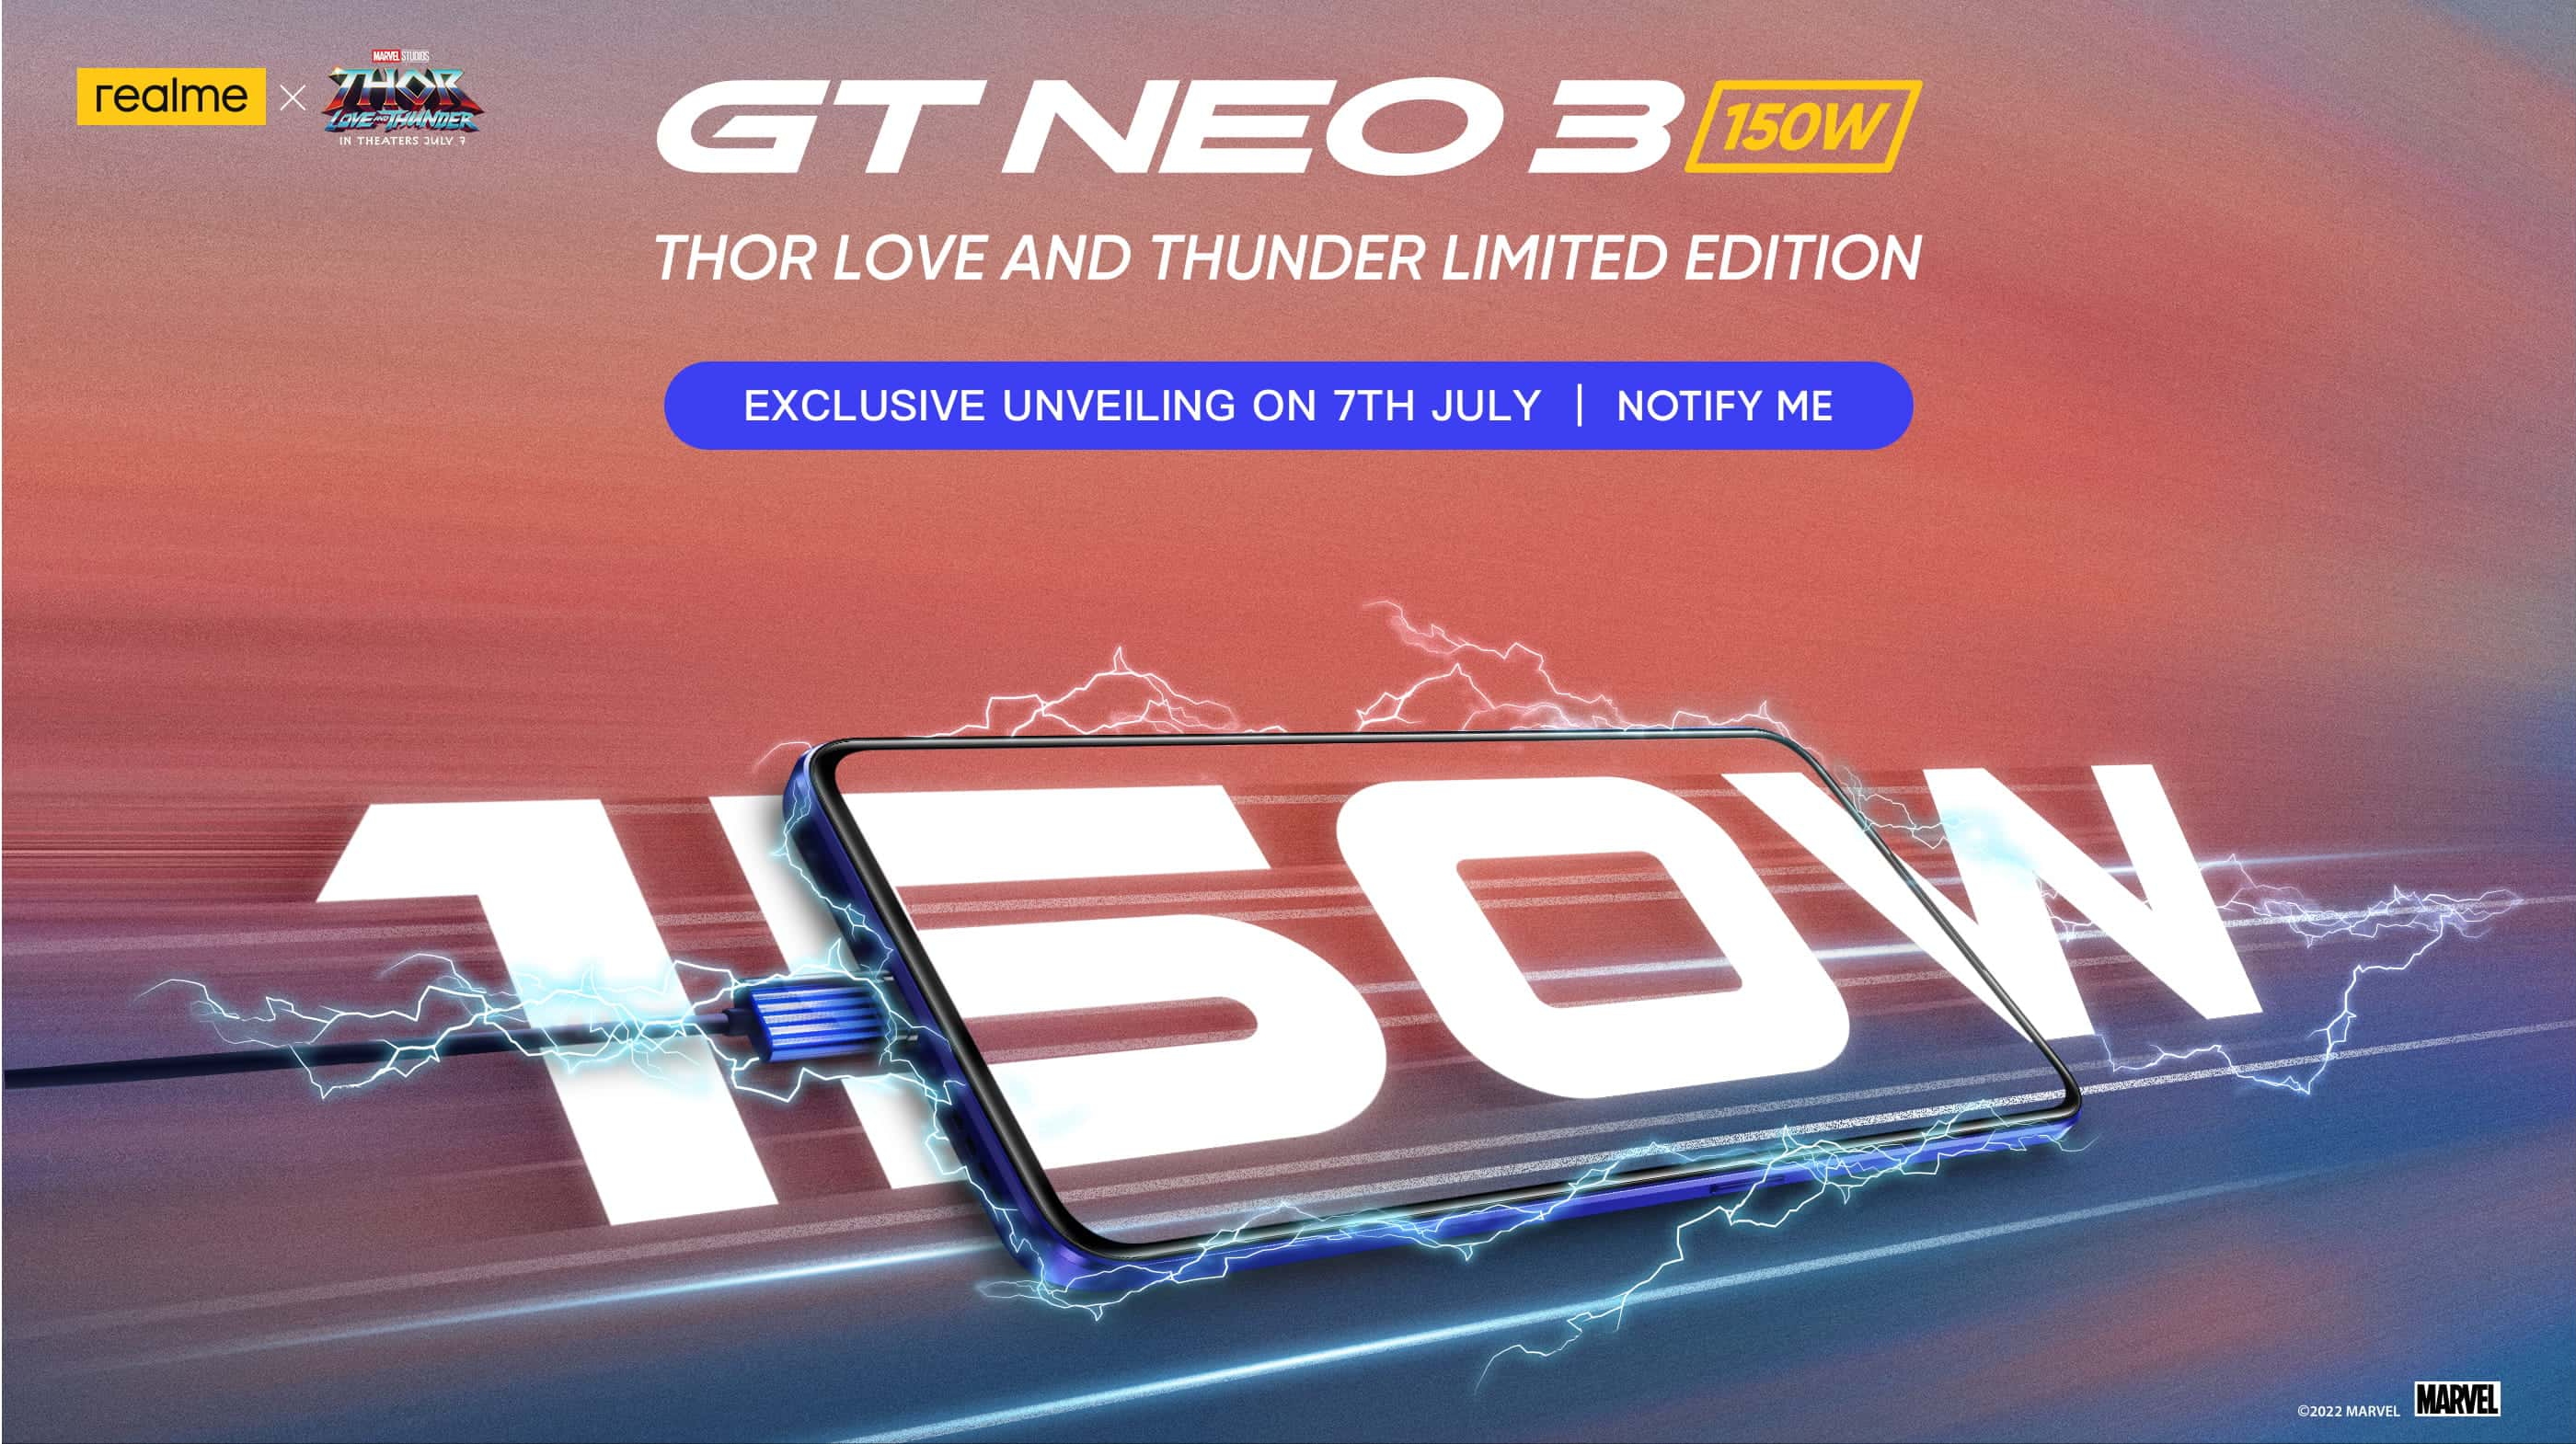 7 lipca realme wyda specjalną wersję realme GT Neo 3, aby uczcić premierę Thor: Love and Thunder